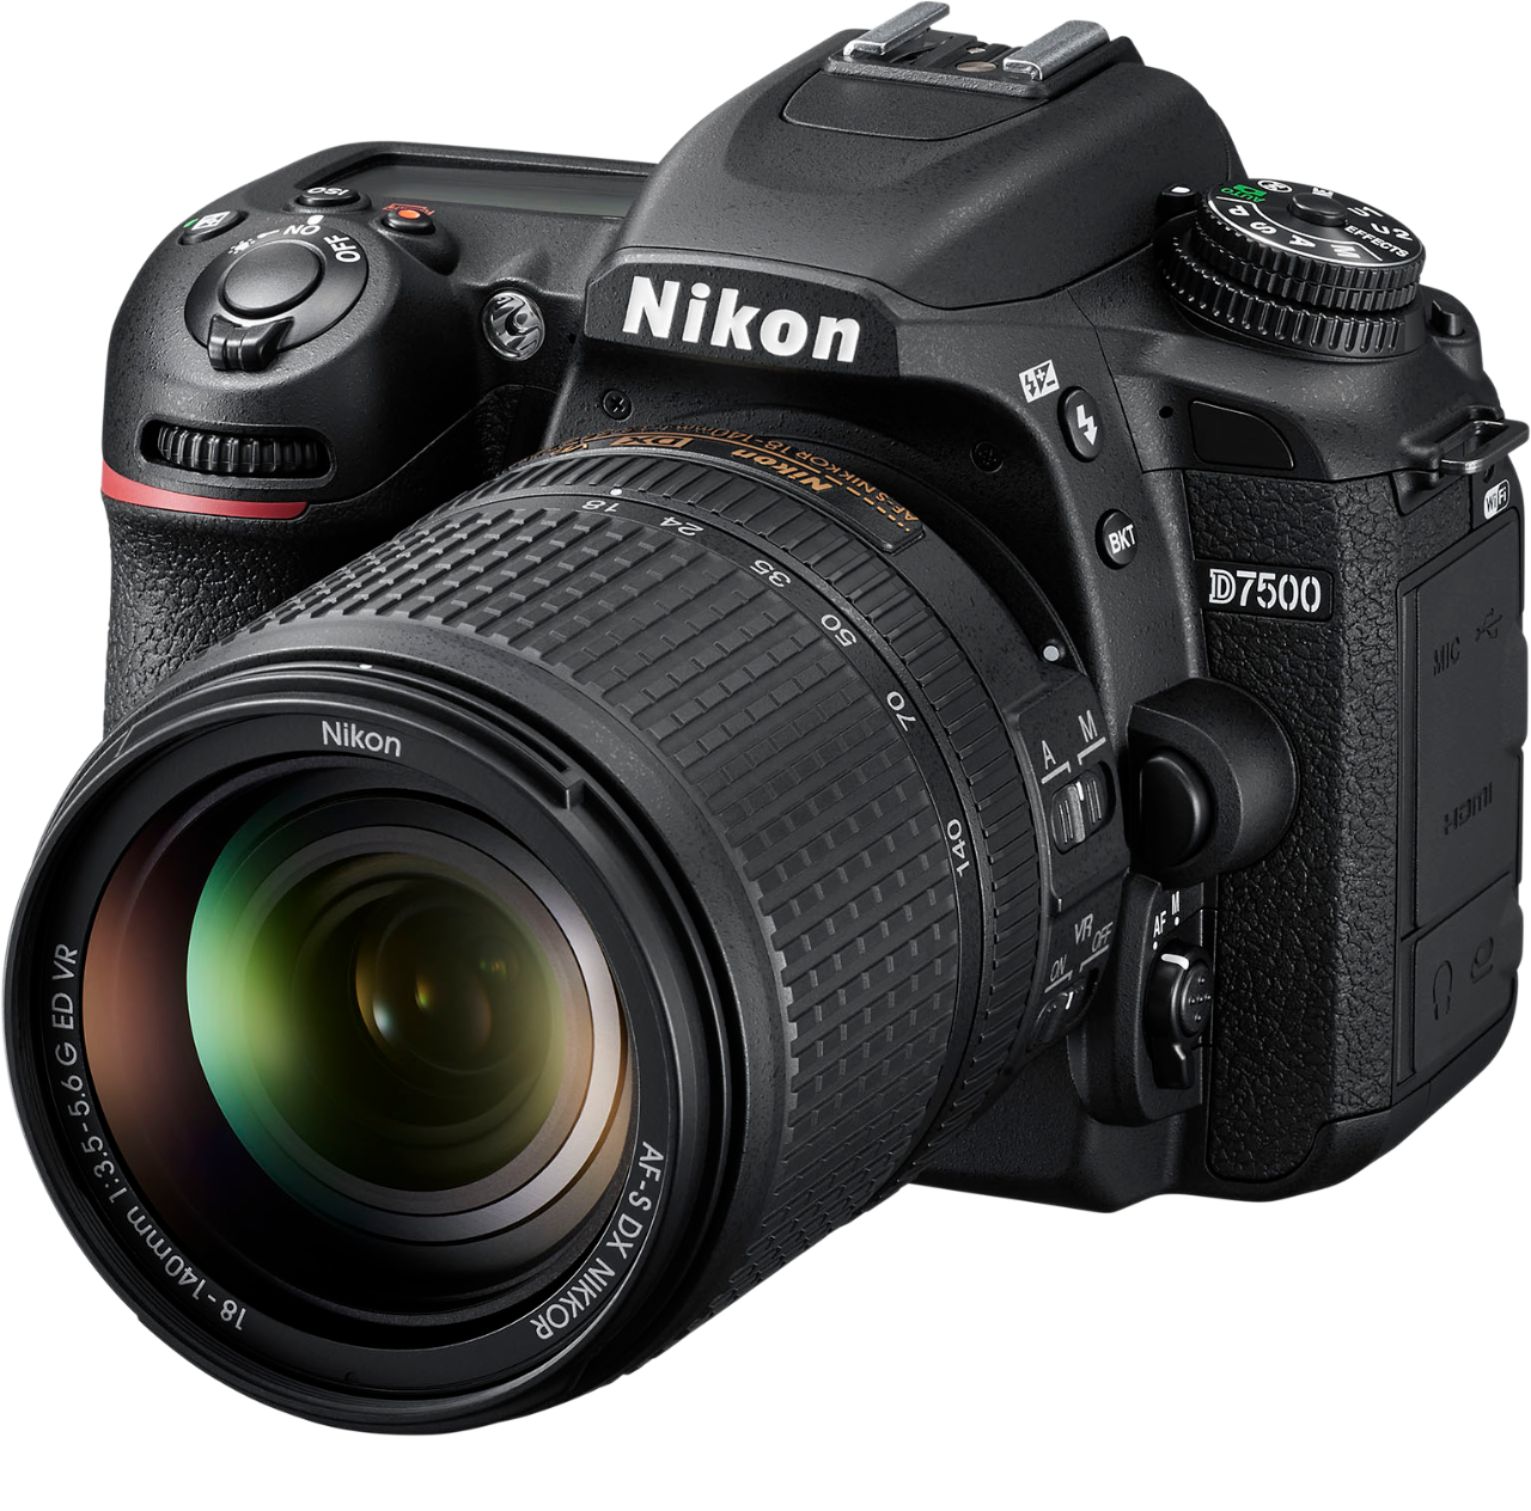 Left View: Nikon - D7500 DSLR Camera with AF-S DX NIKKOR 18-300mm f/3.5-6.3G ED VR lens - Black